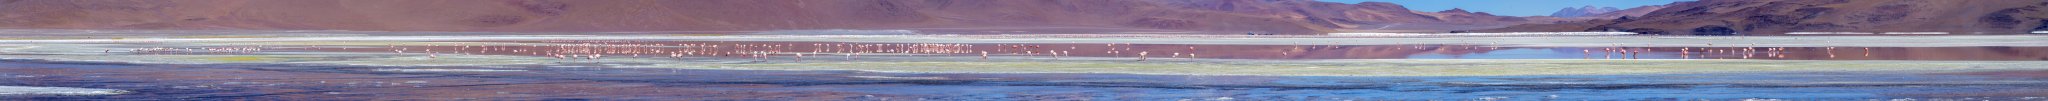 Am frühen Morgen tummeln sich Tausende von Flamingos auf der Laguna Colorada, Bolivien, November 2016.